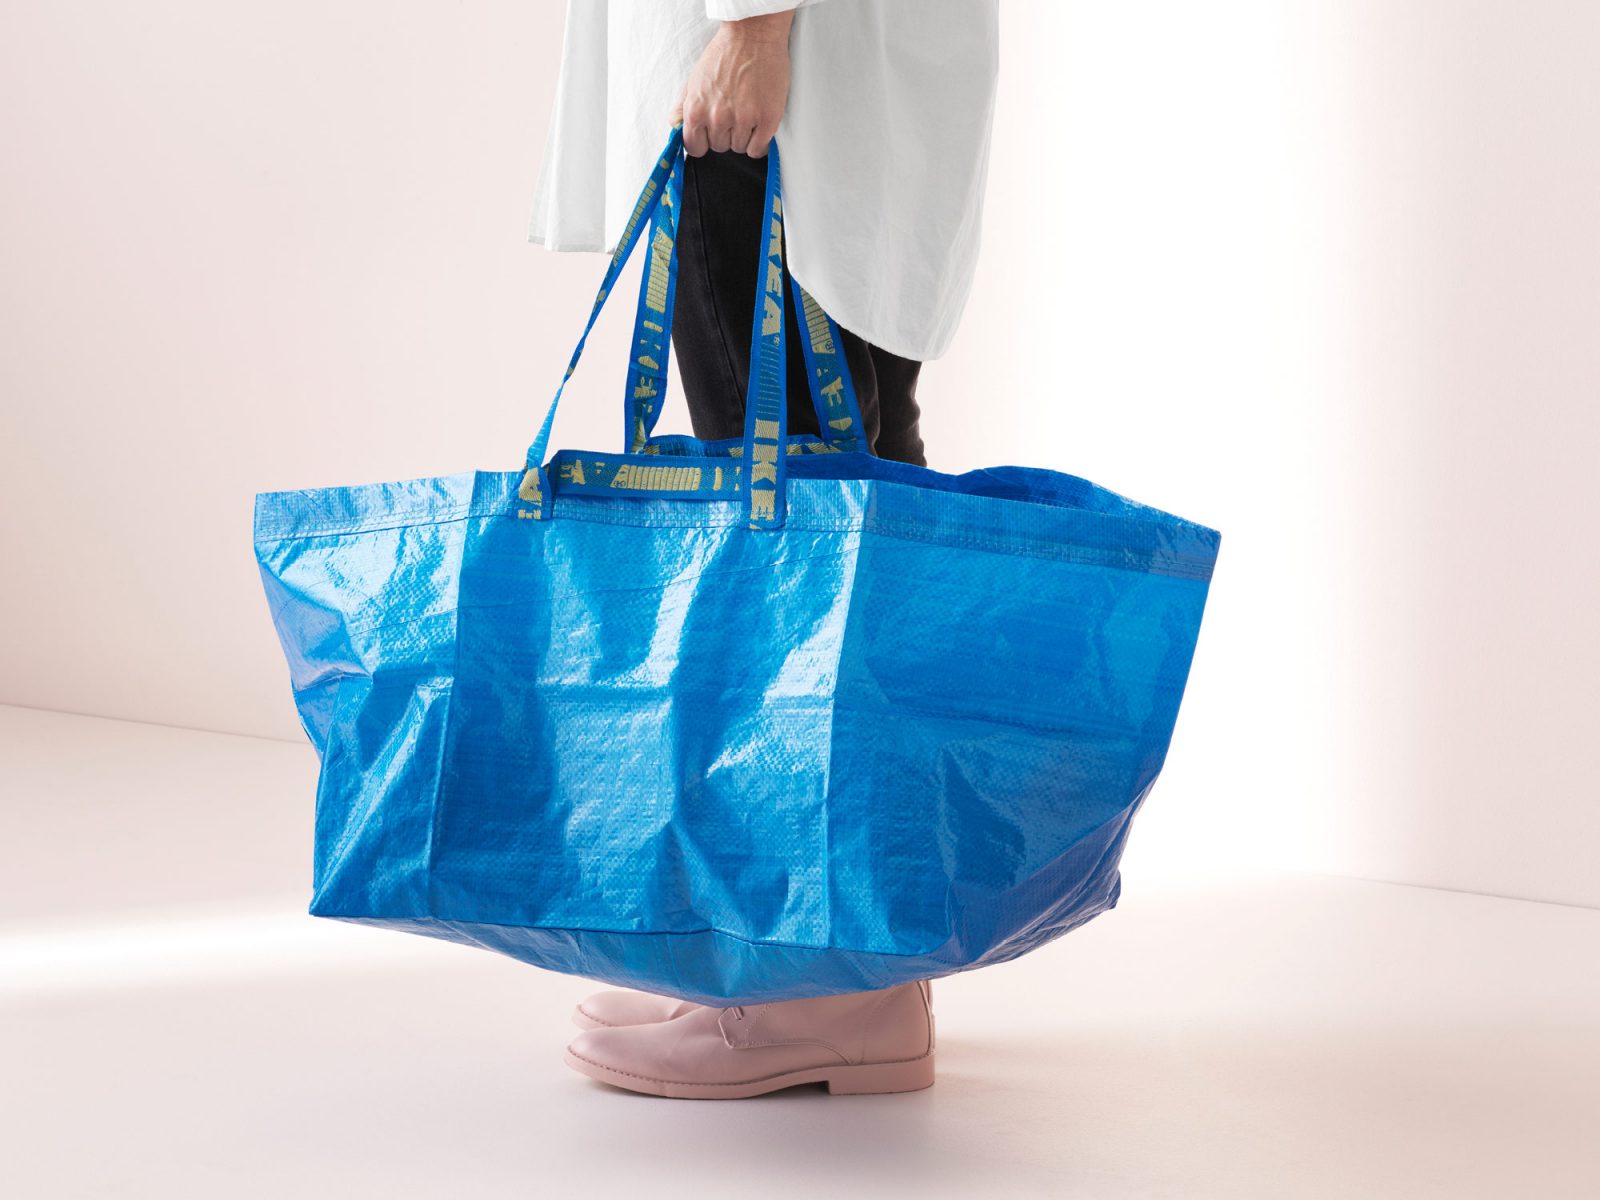 Una persona sostiene una bolsa FRAKTA azul; solo se ve la parte inferior de su cuerpo.